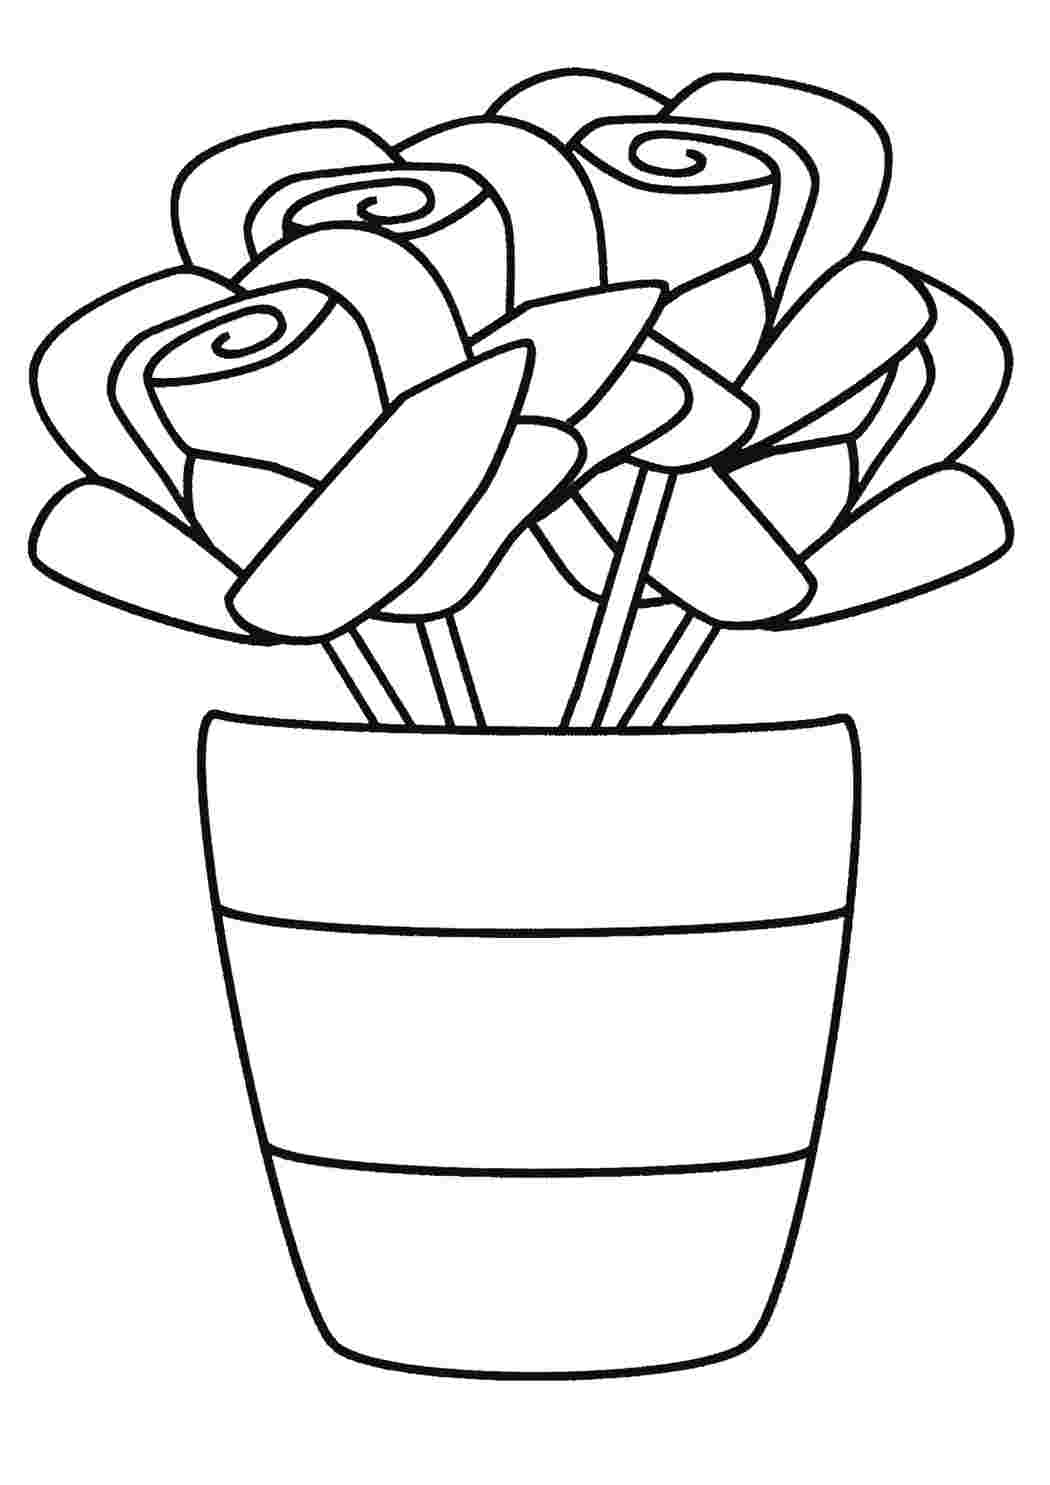 Простая раскраска. кактус - милый горшок для раскраски - векторный рисунок